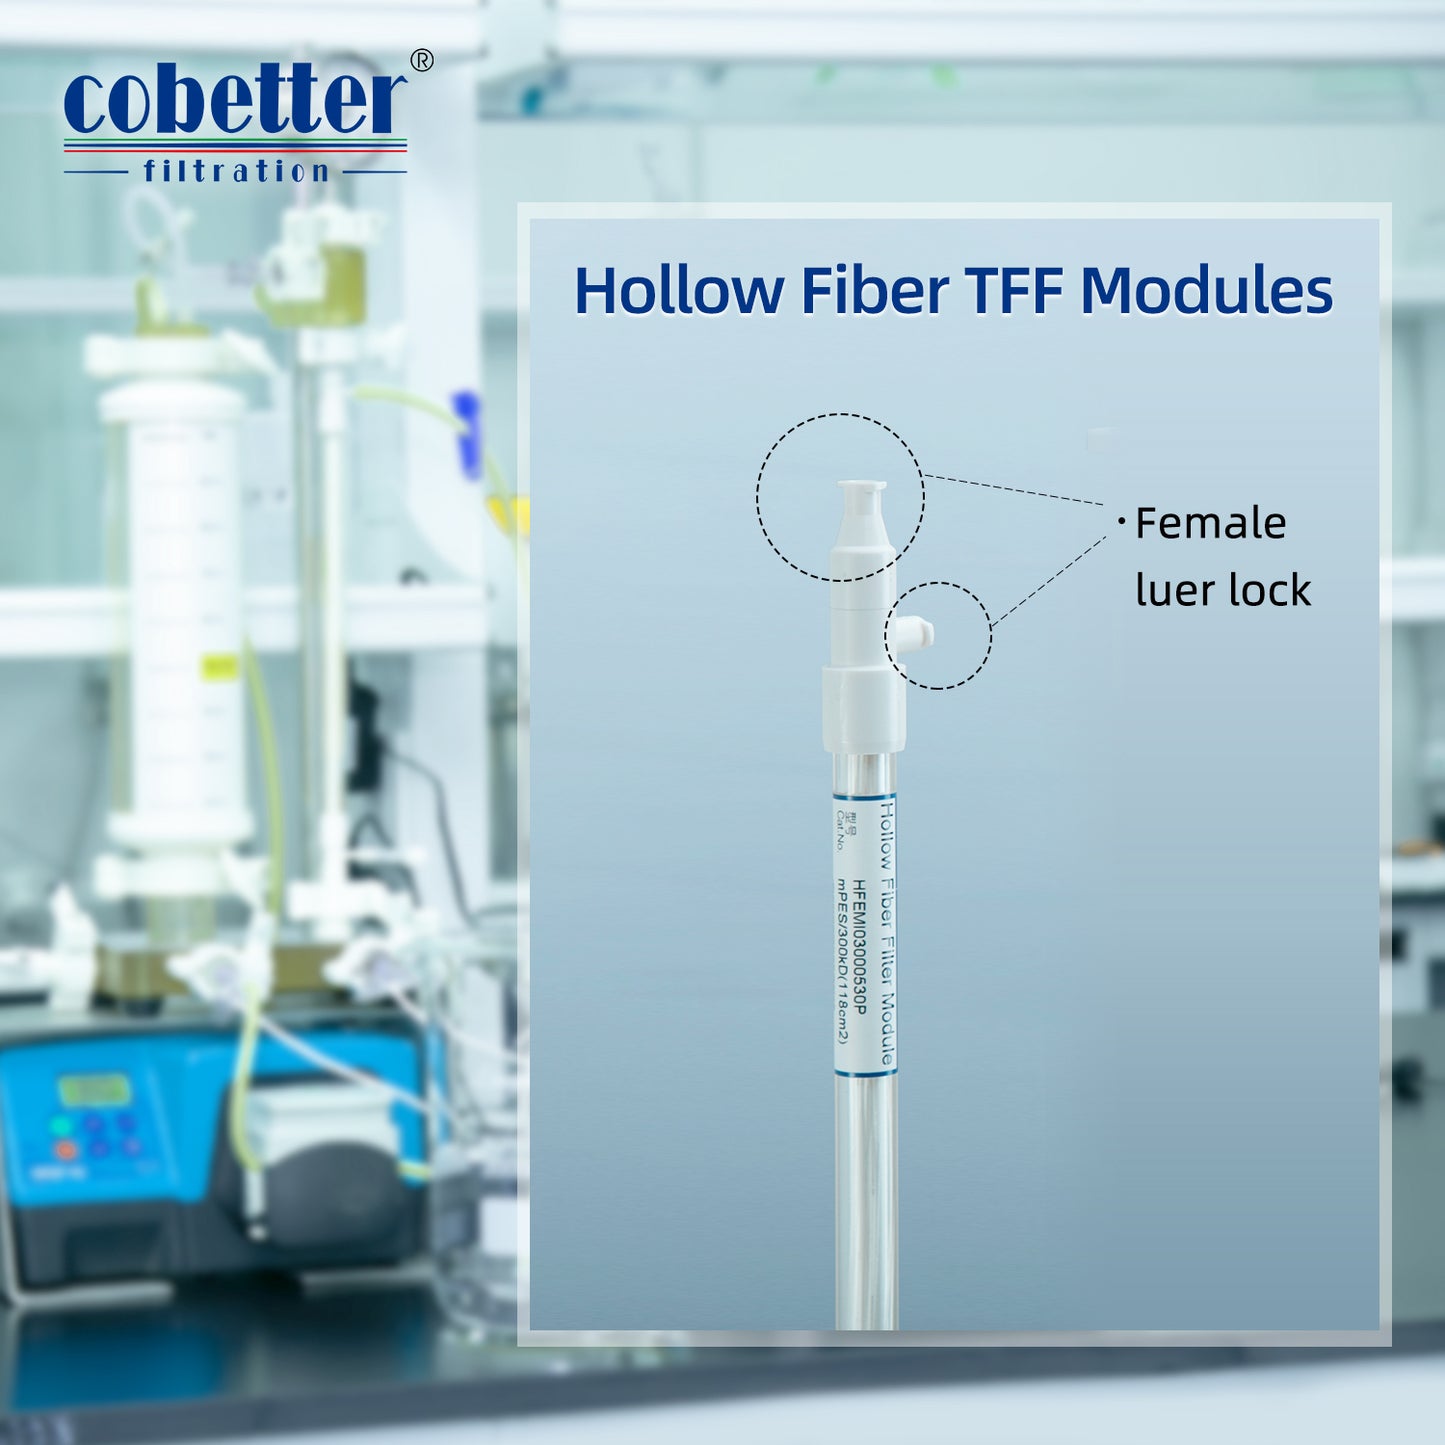 COBETTER 0.5mm Mini Hollow Fiber TFF mPES Membrane